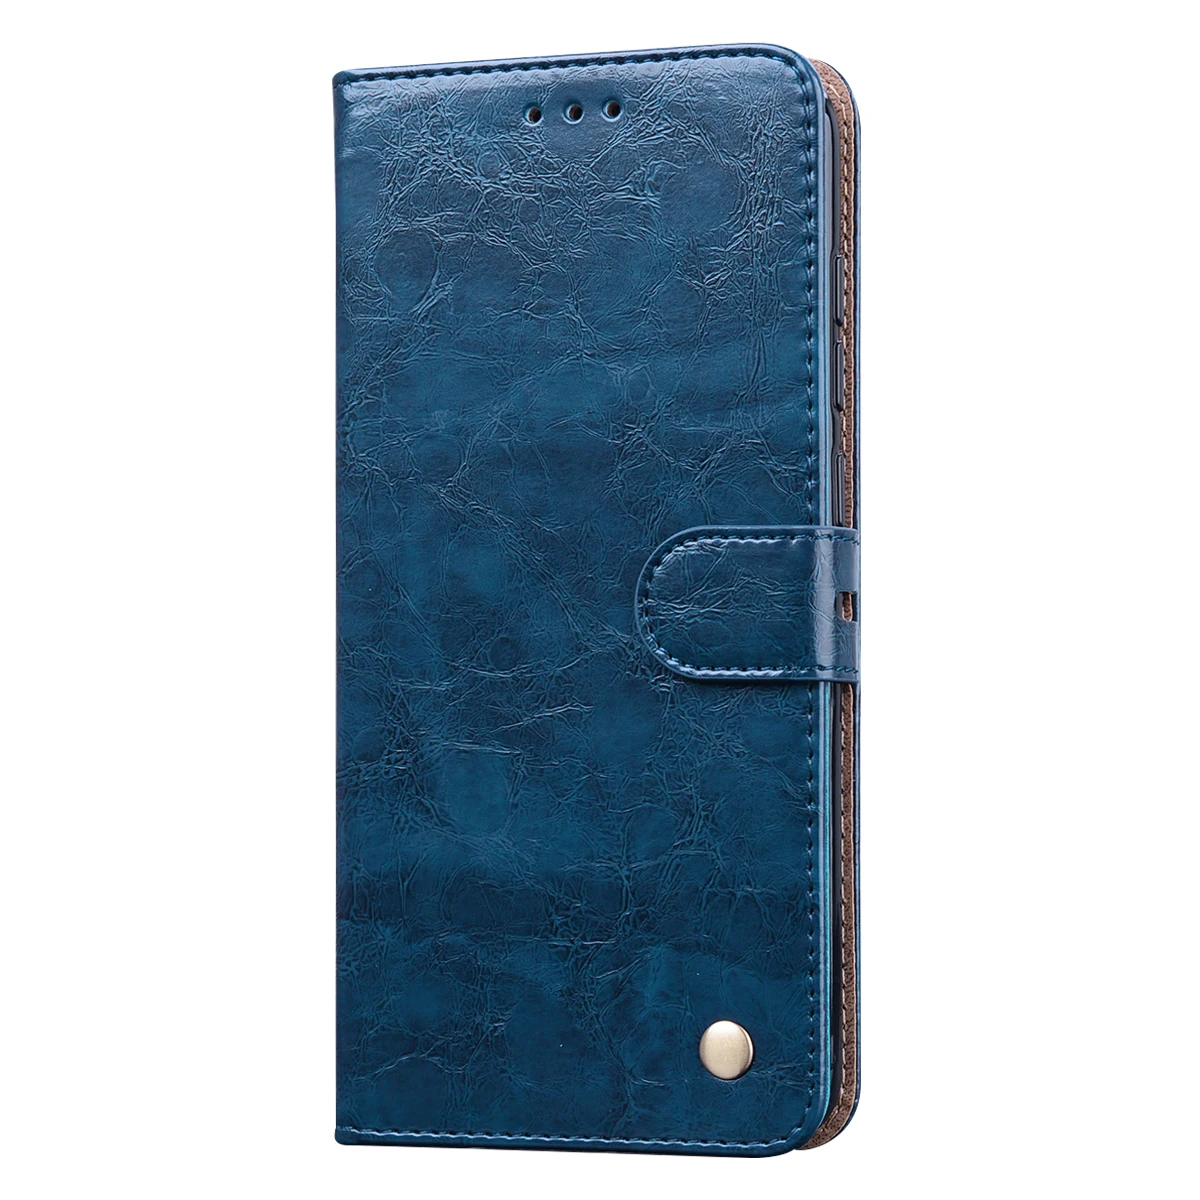 leather case for xiaomi Mềm mại Ốp Lưng Bao Da Ví Da Cho Xiaomi Redmi 9A 9C 6A 7A 8A 9 8 Redmi Note 9S 8T 6 7 8 9 Pro Flip Cover Thẻ Vỏ xiaomi leather case glass